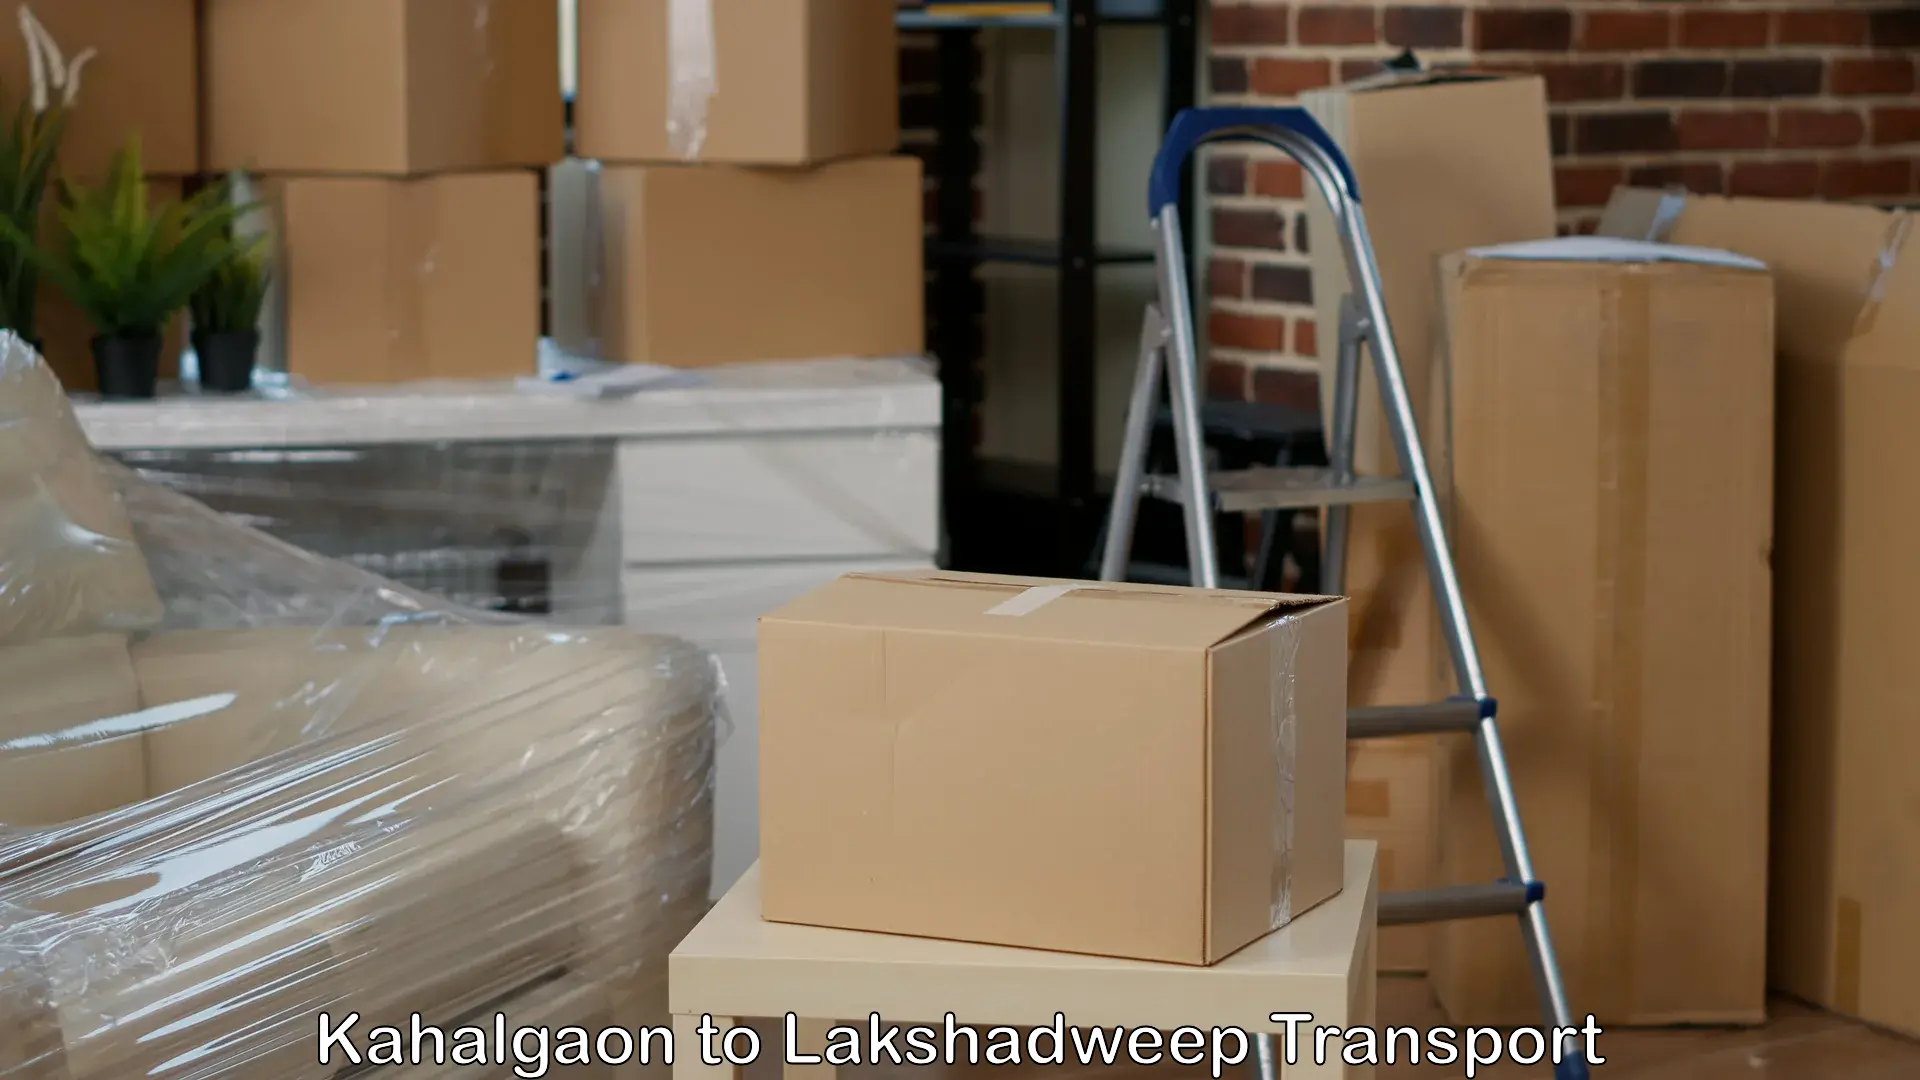 Shipping partner Kahalgaon to Lakshadweep